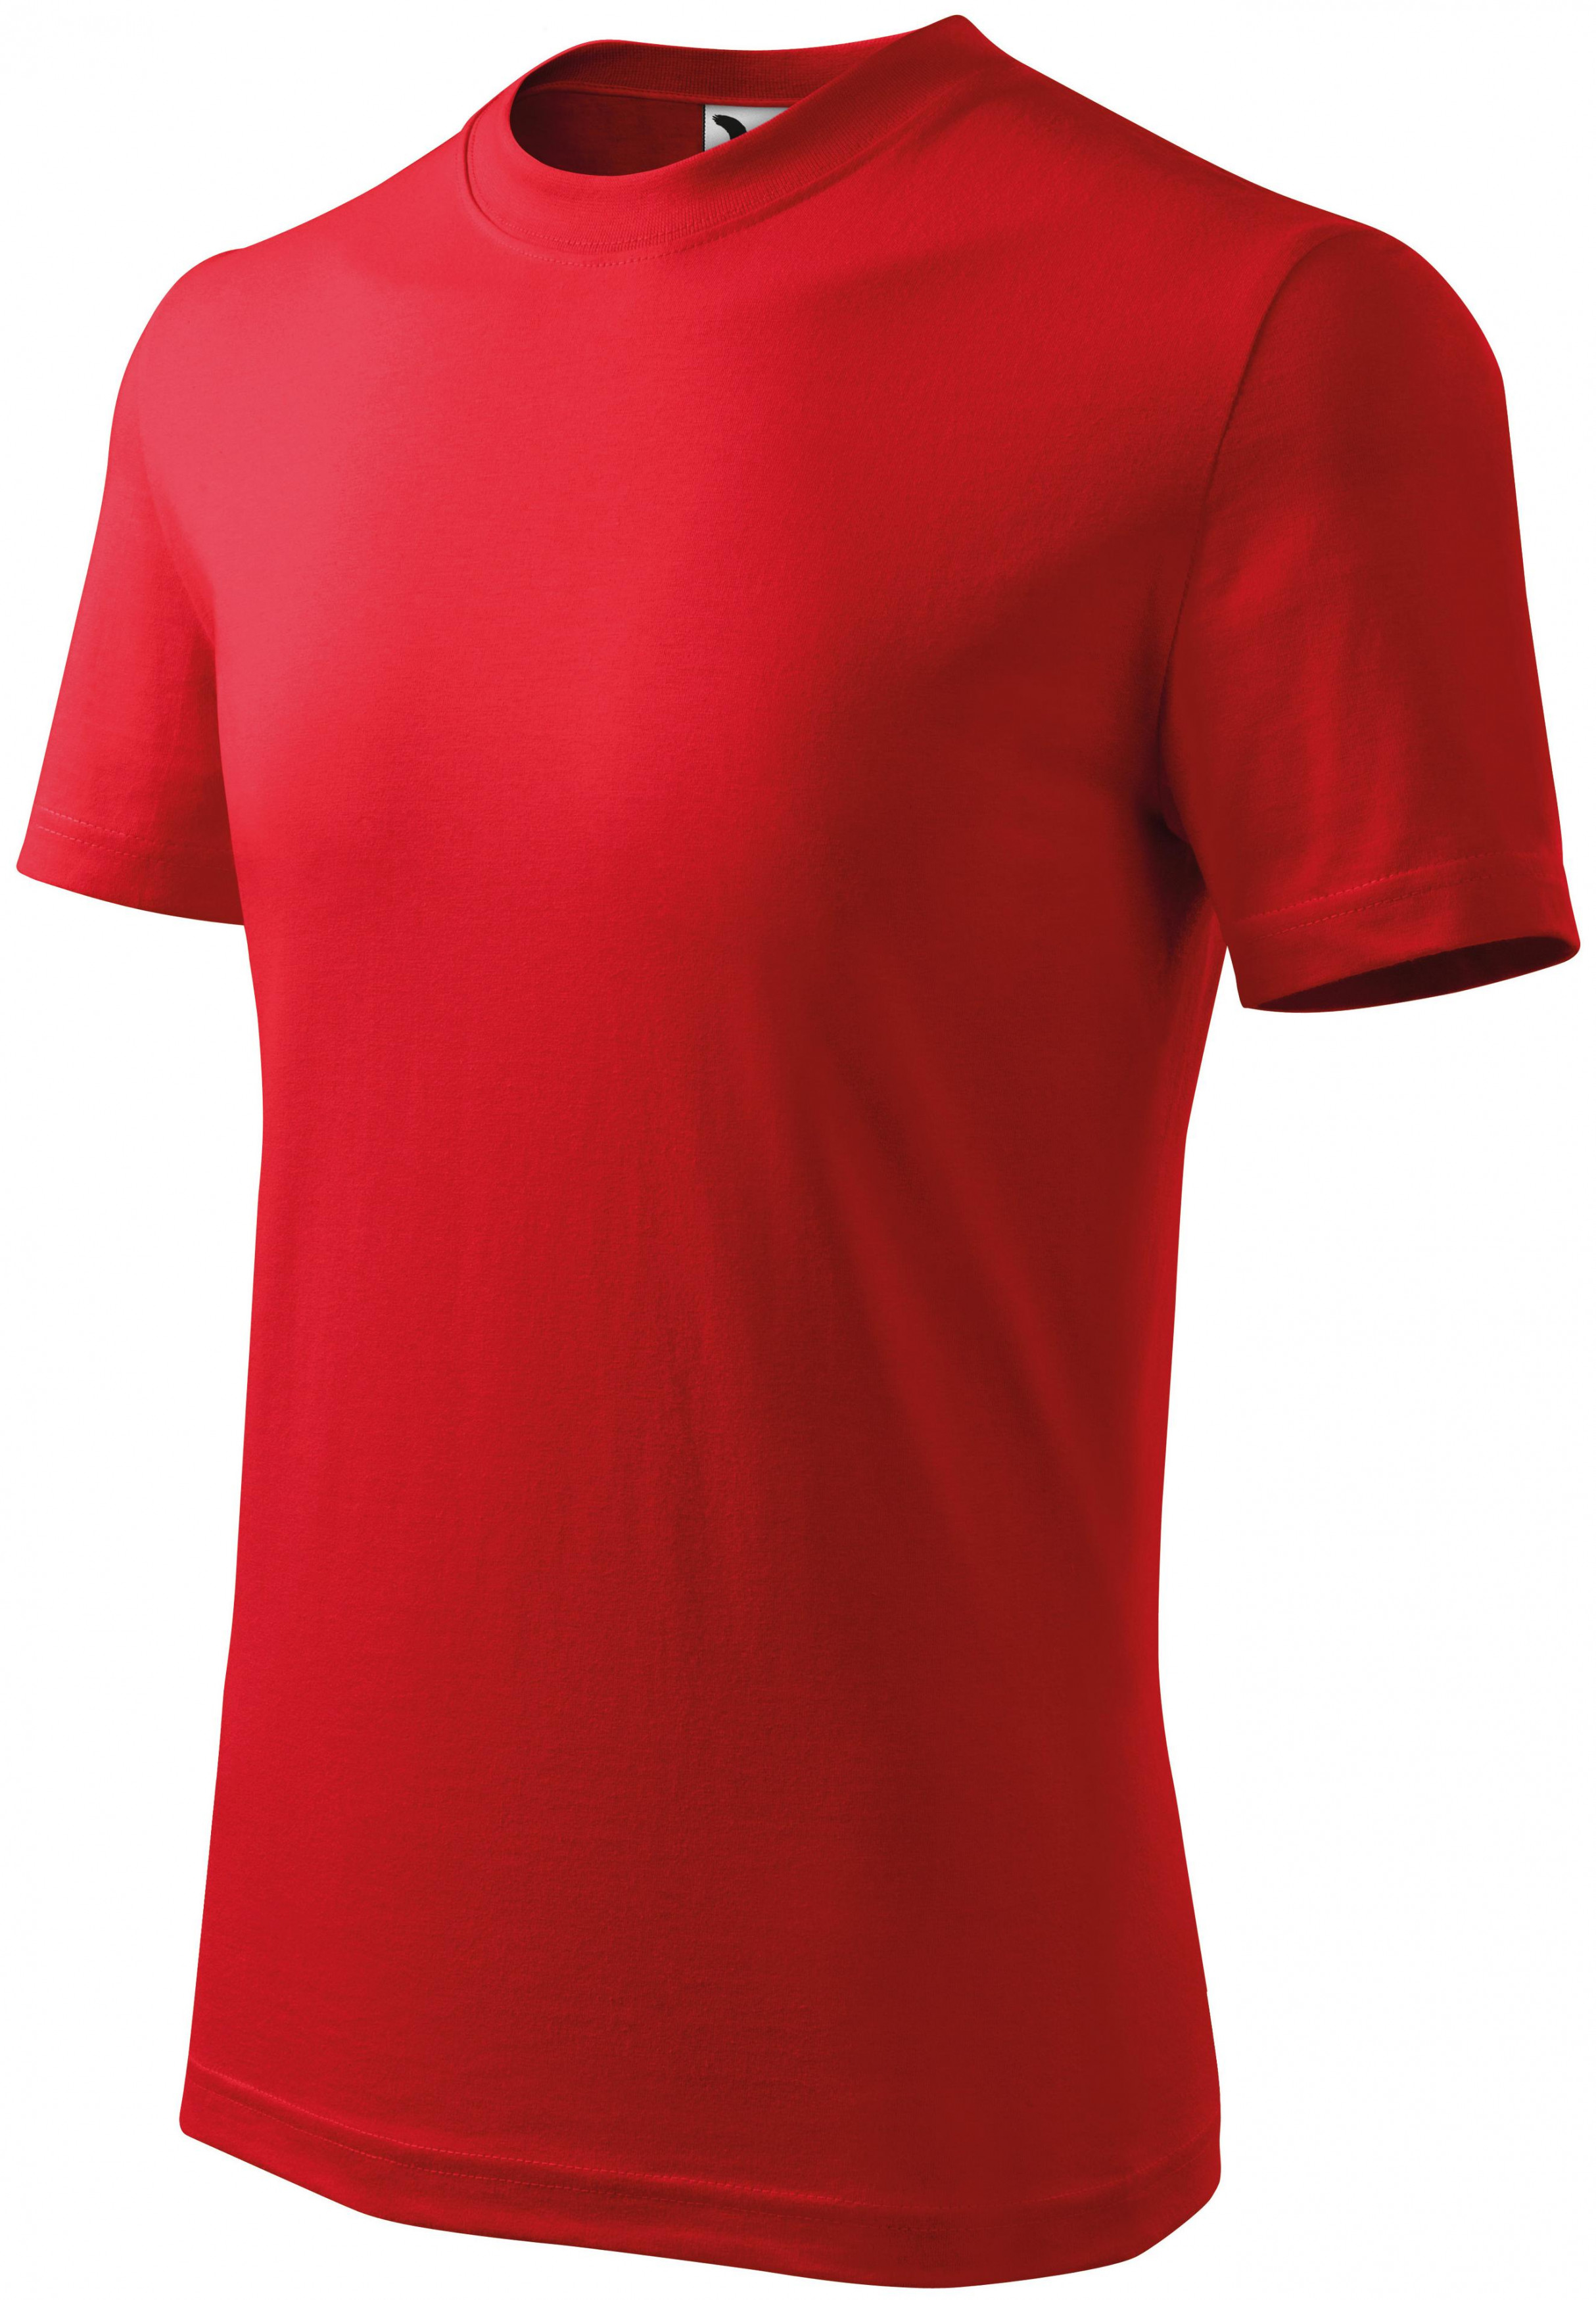 Detské tričko jednoduché, červená, 122cm / 6rokov